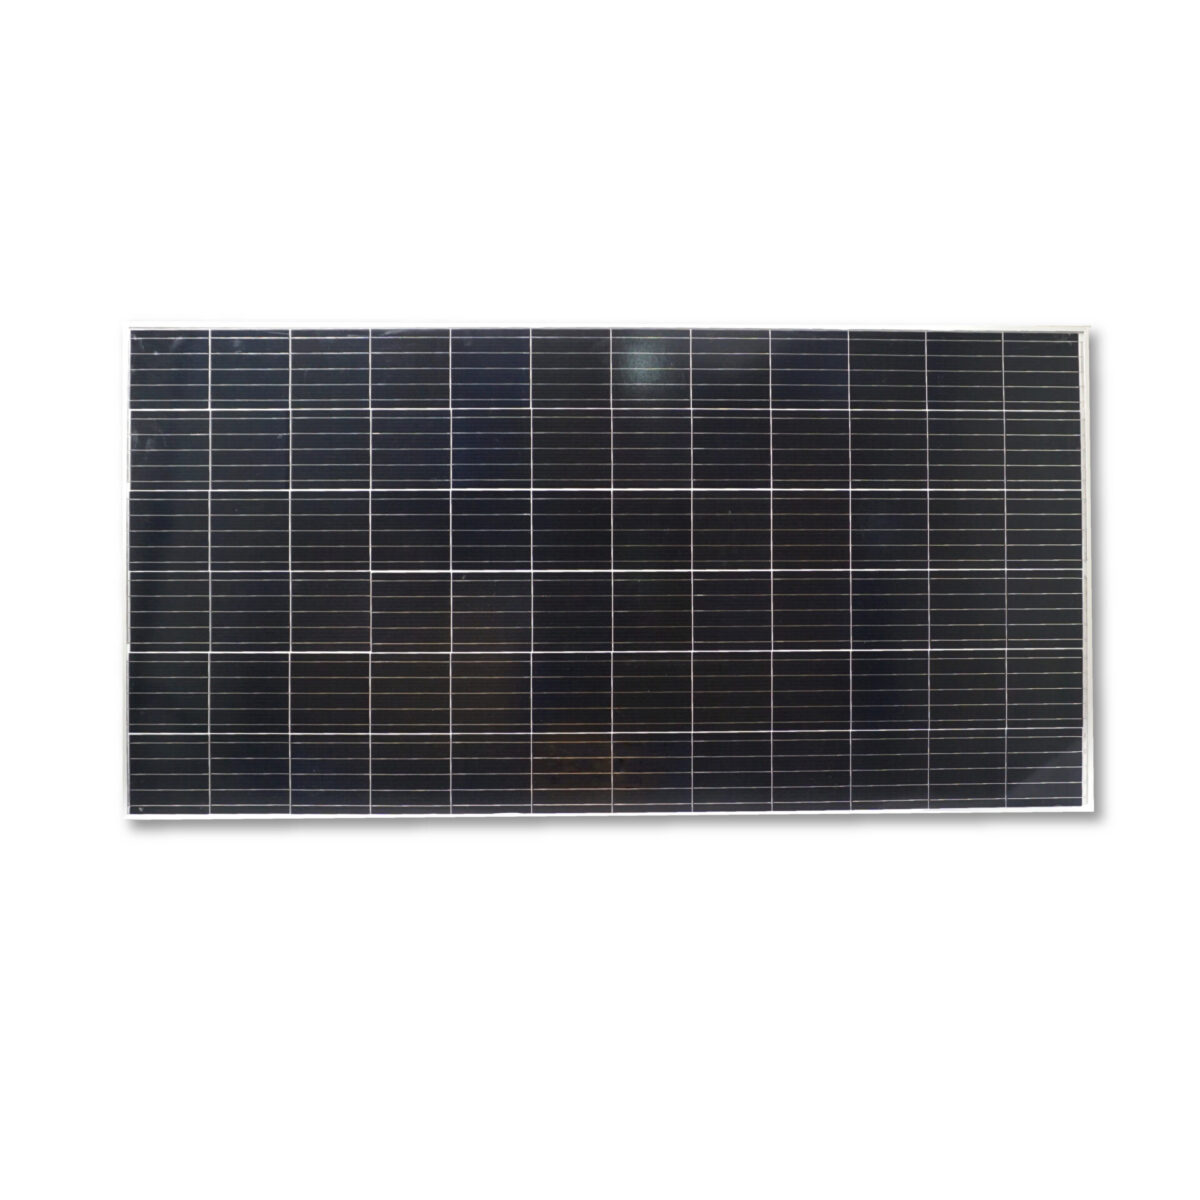 แผงโซลาร์เซลล์ รุ่น Solar Panel